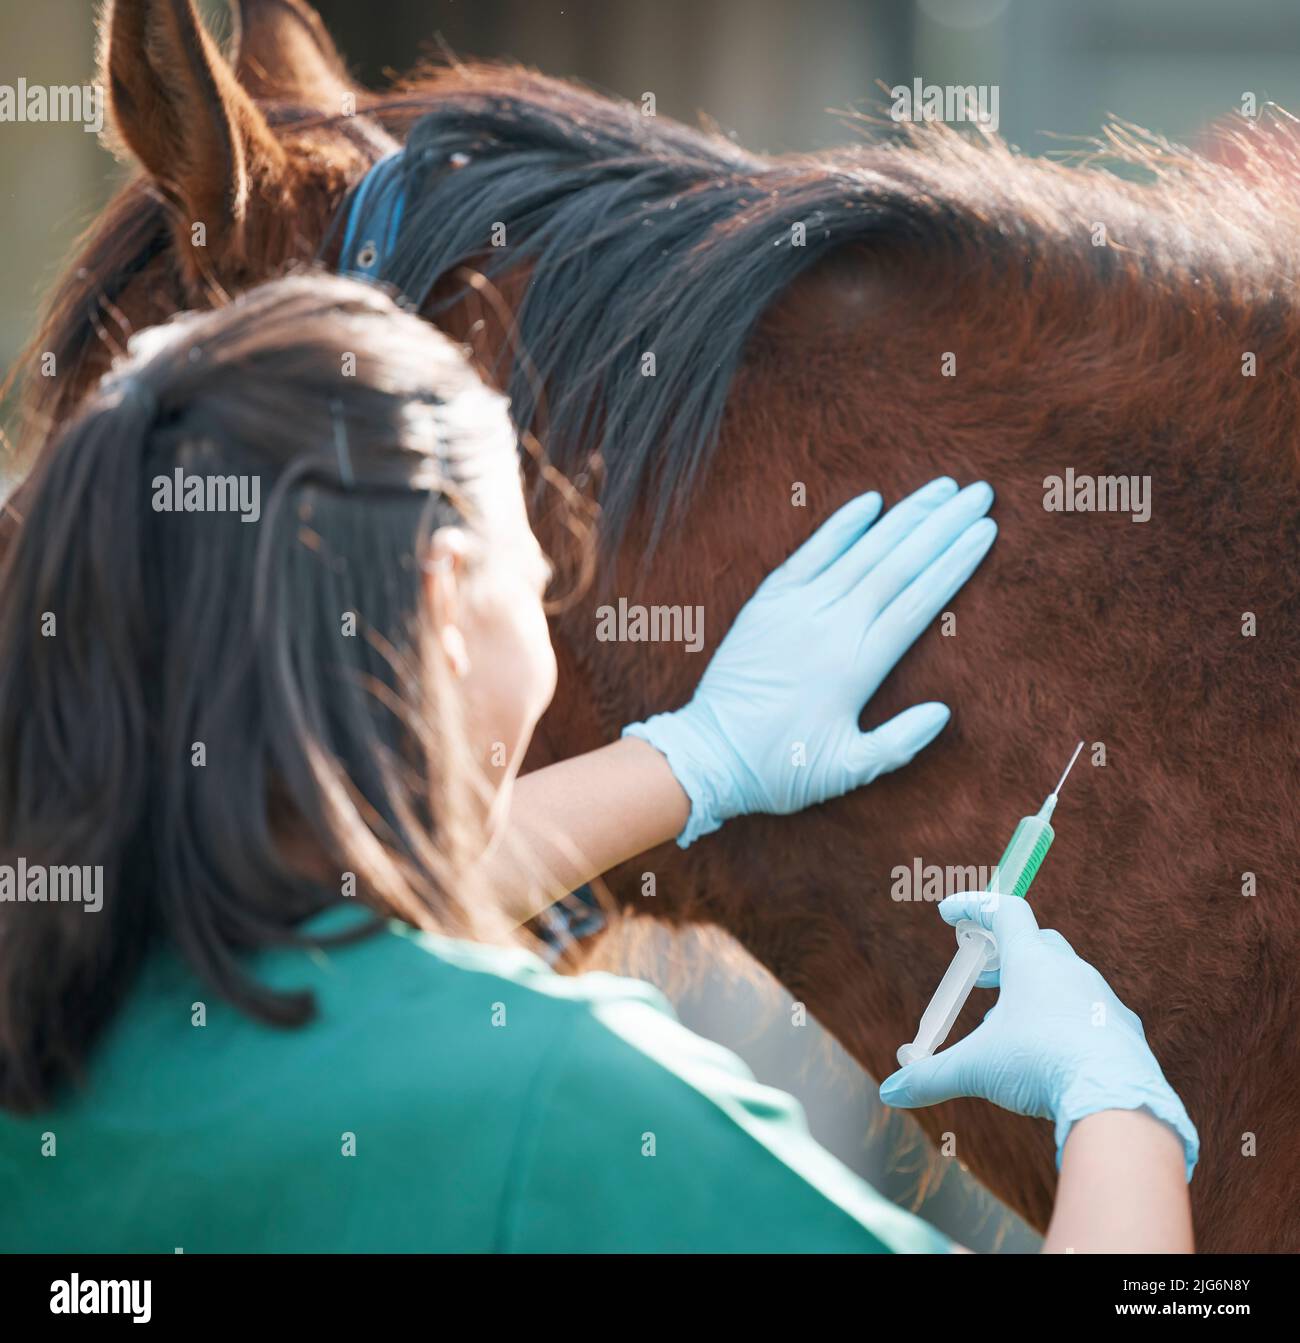 Dies dauert nur eine Sekunde. Aufnahme eines nicht erkennbaren Tierarztes, der allein steht und einem Pferd auf einer Farm eine Injektion gibt. Stockfoto